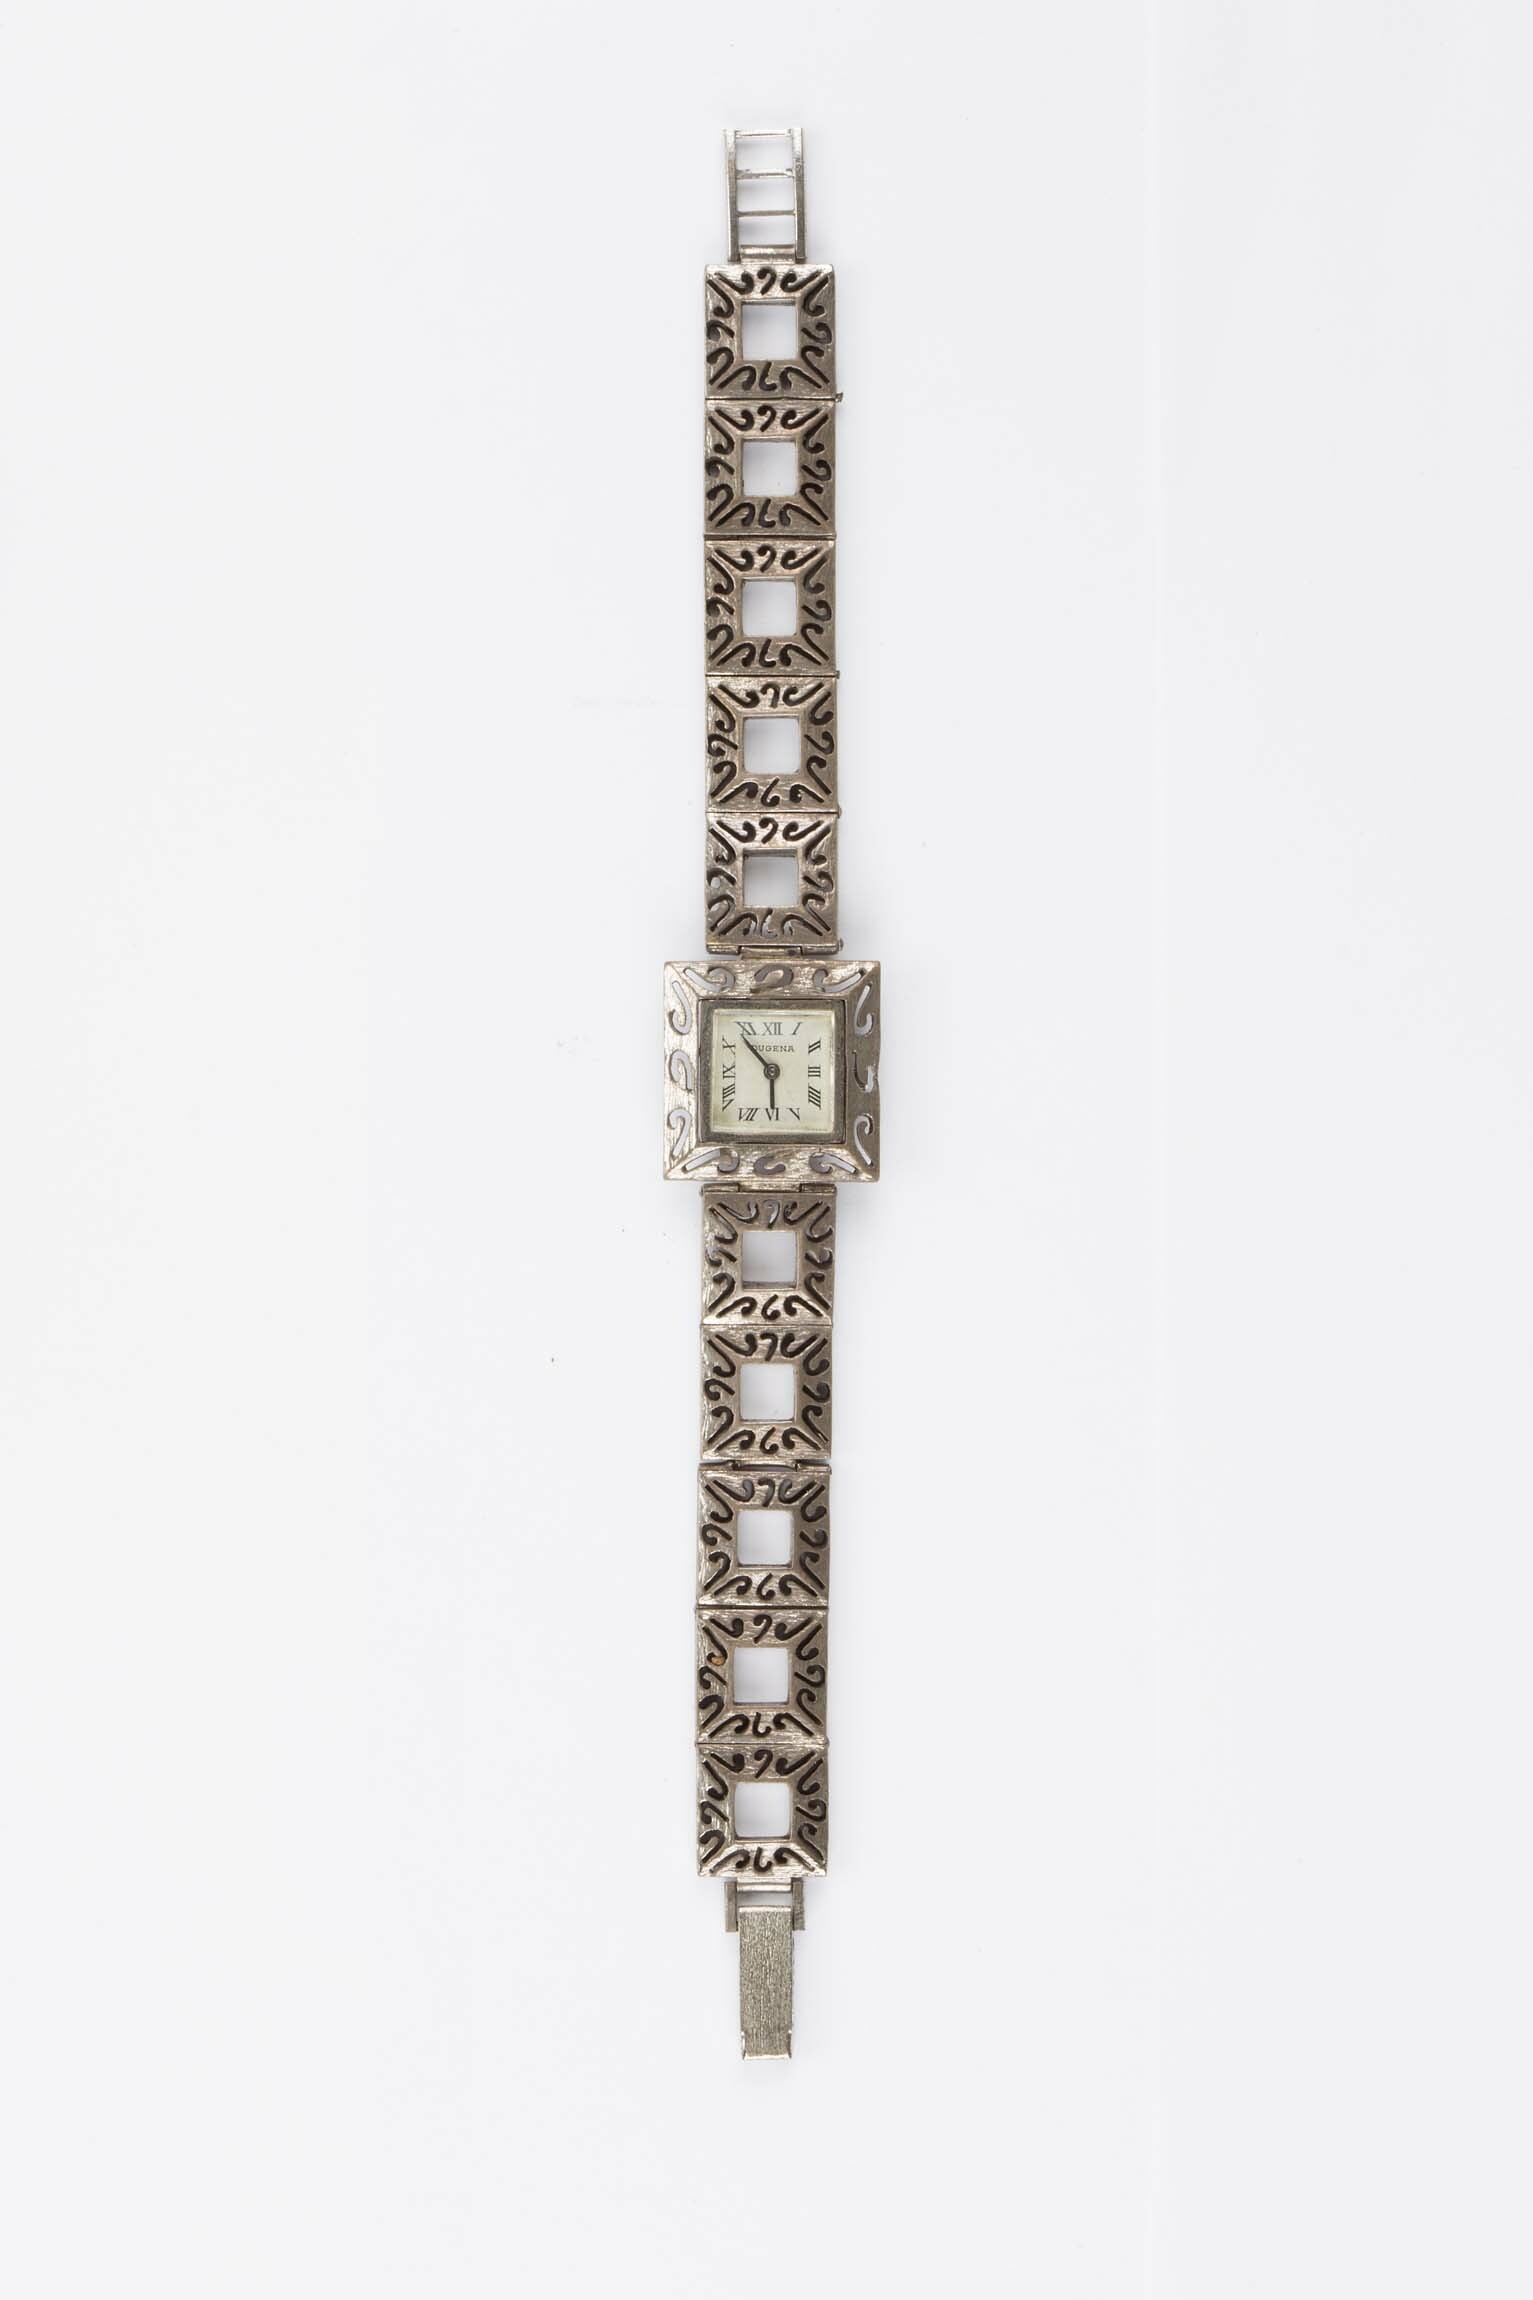 Armbanduhr Dugena, Deutschland und Schweiz, um 1960 (Deutsches Uhrenmuseum CC BY-SA)